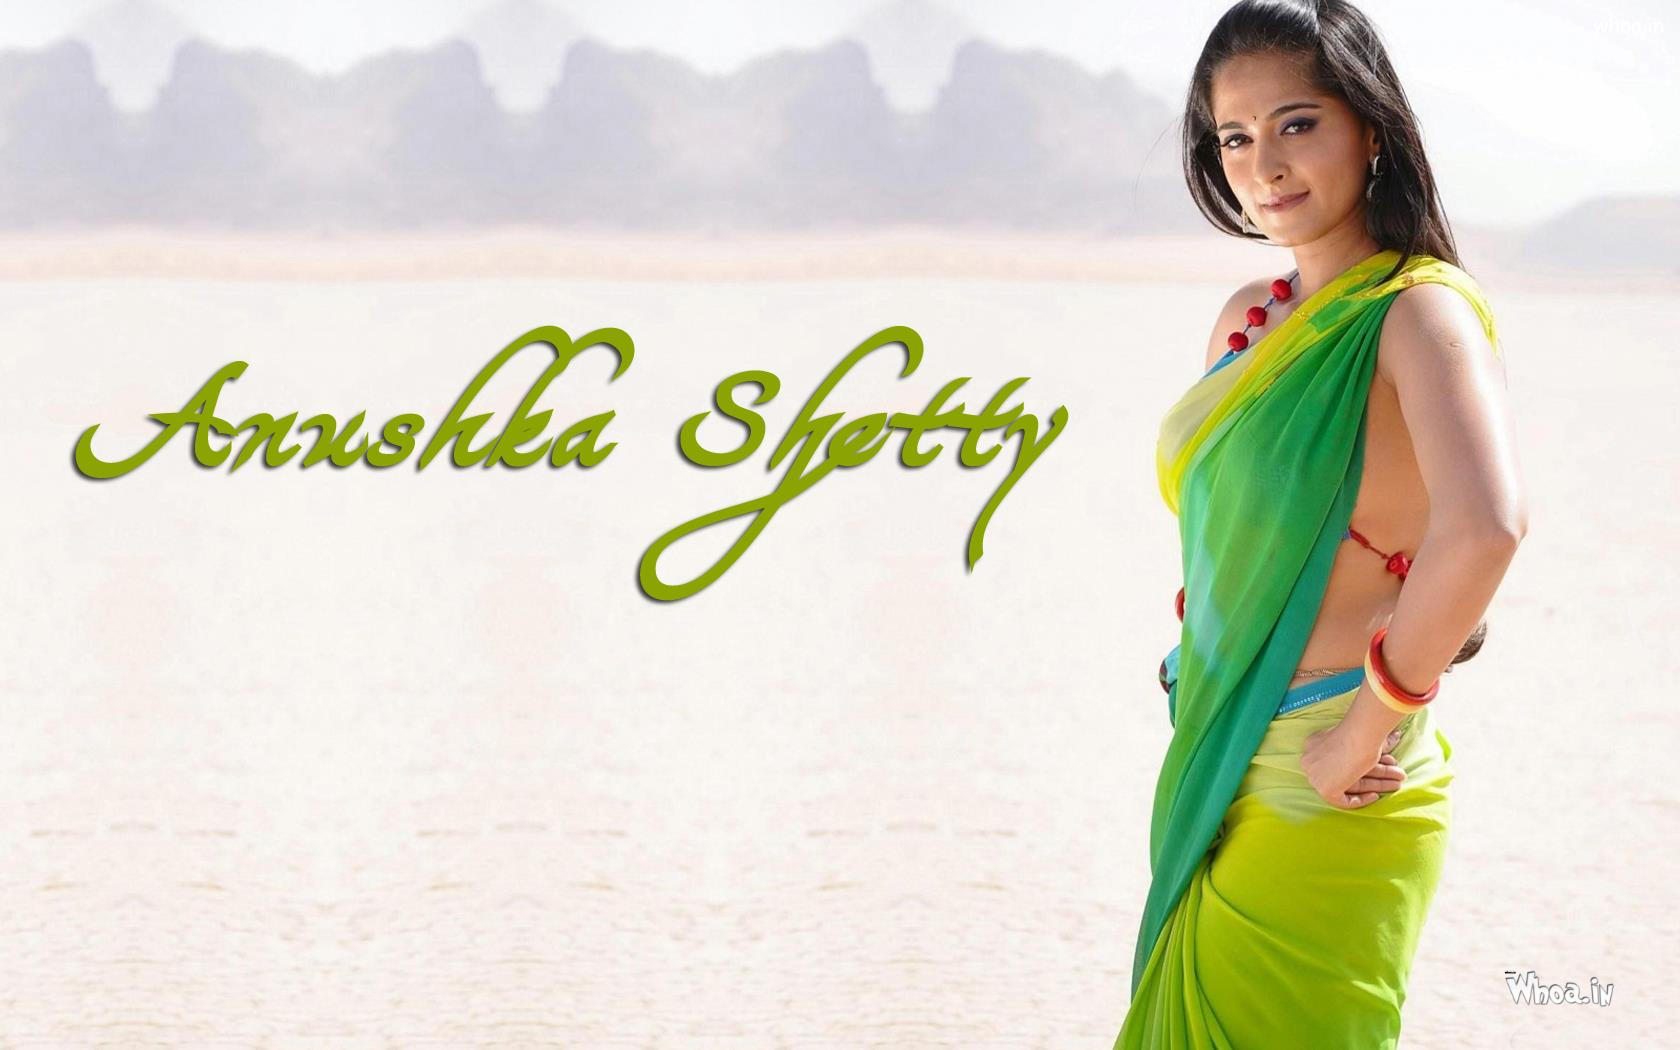 Anushka Shetty Hot Photoshoot In Yellow And Green Saree - Anushka Shetty Hot Saree - HD Wallpaper 